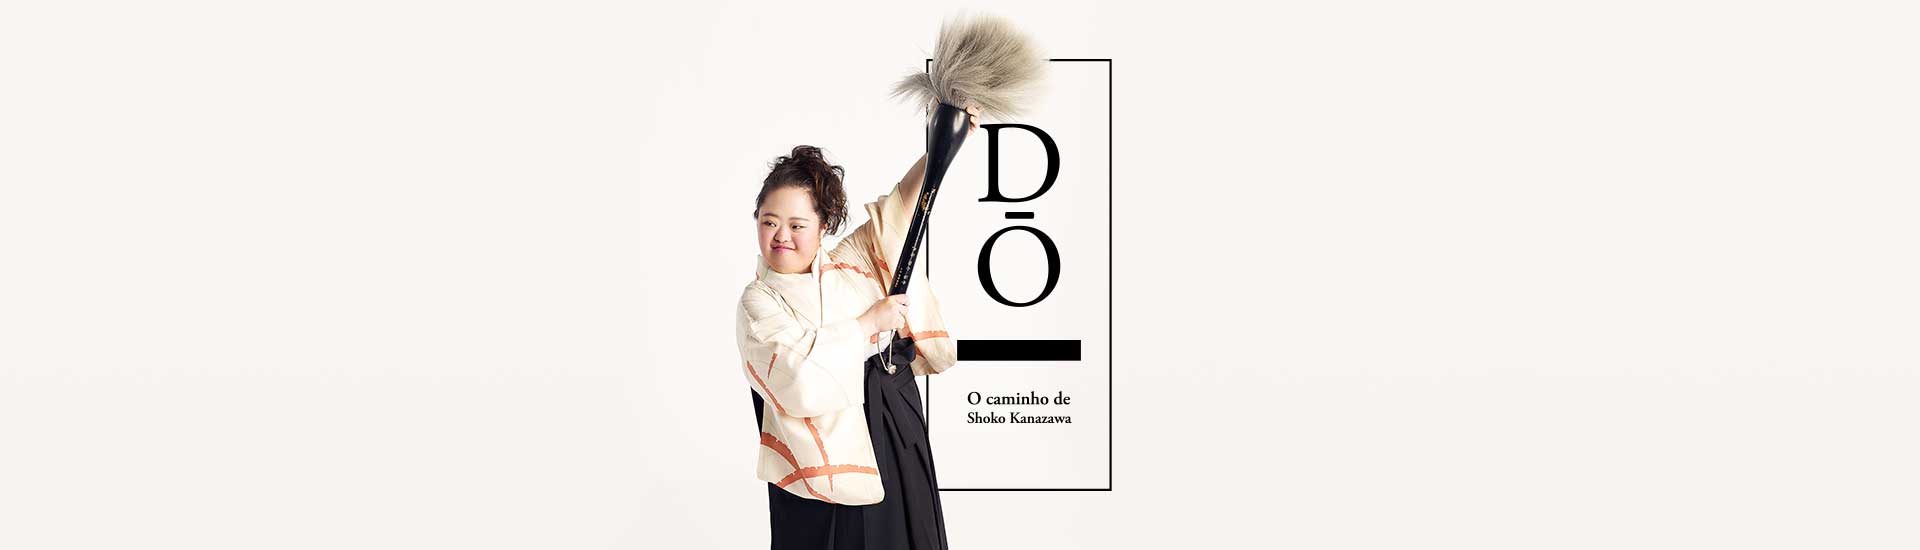 Shoko Kanazawa é uma especialista em Shodō, a arte da caligrafia japonesa